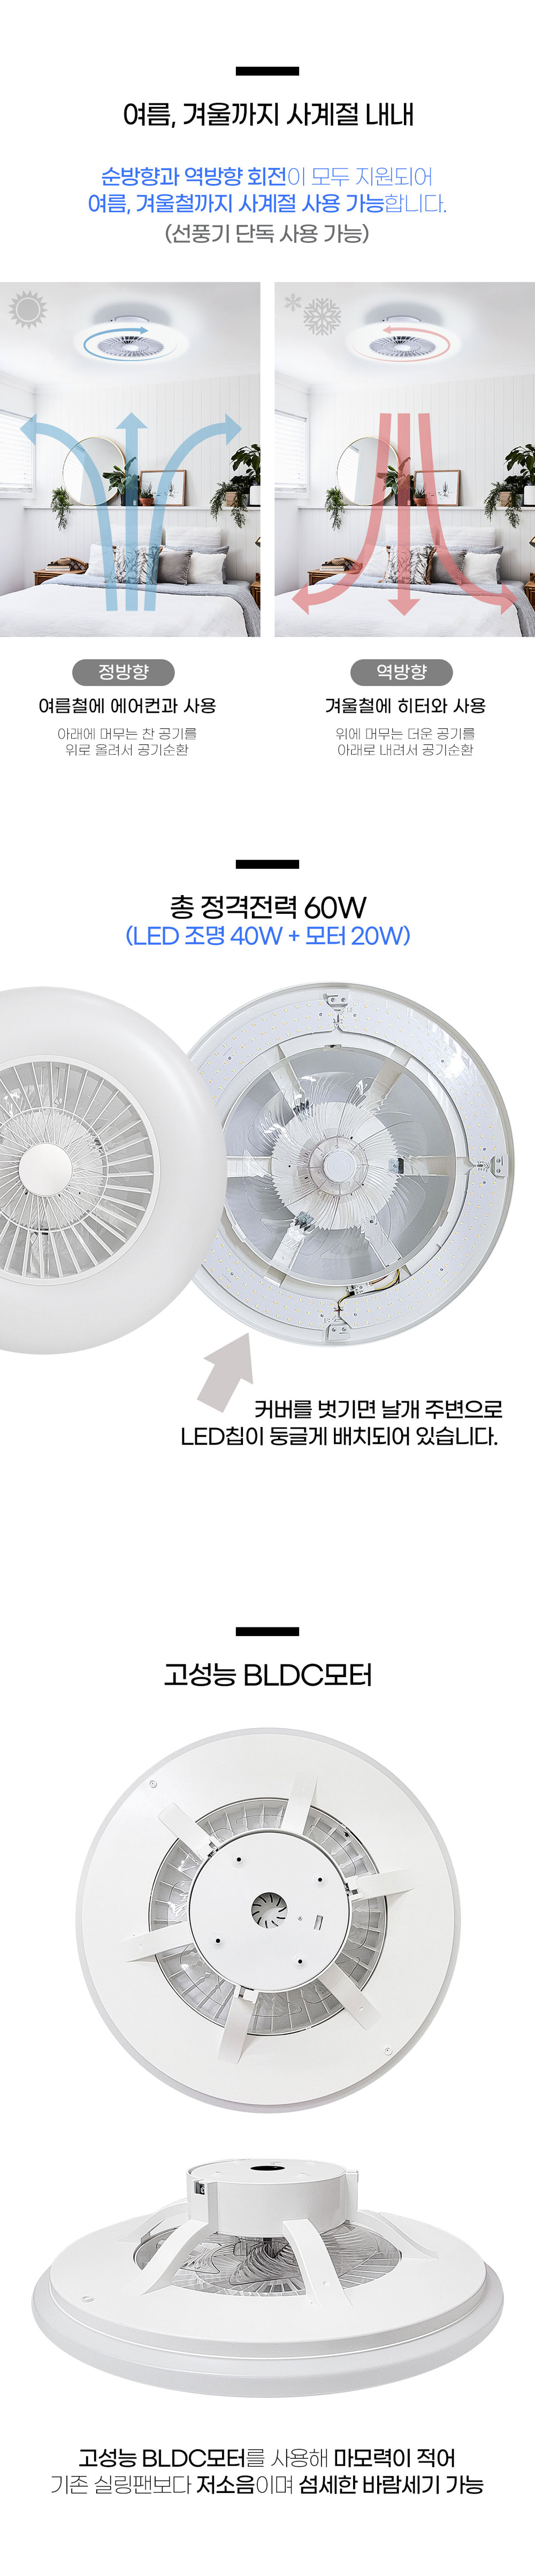 LED 천장 선풍기 방등 인테리어 조명